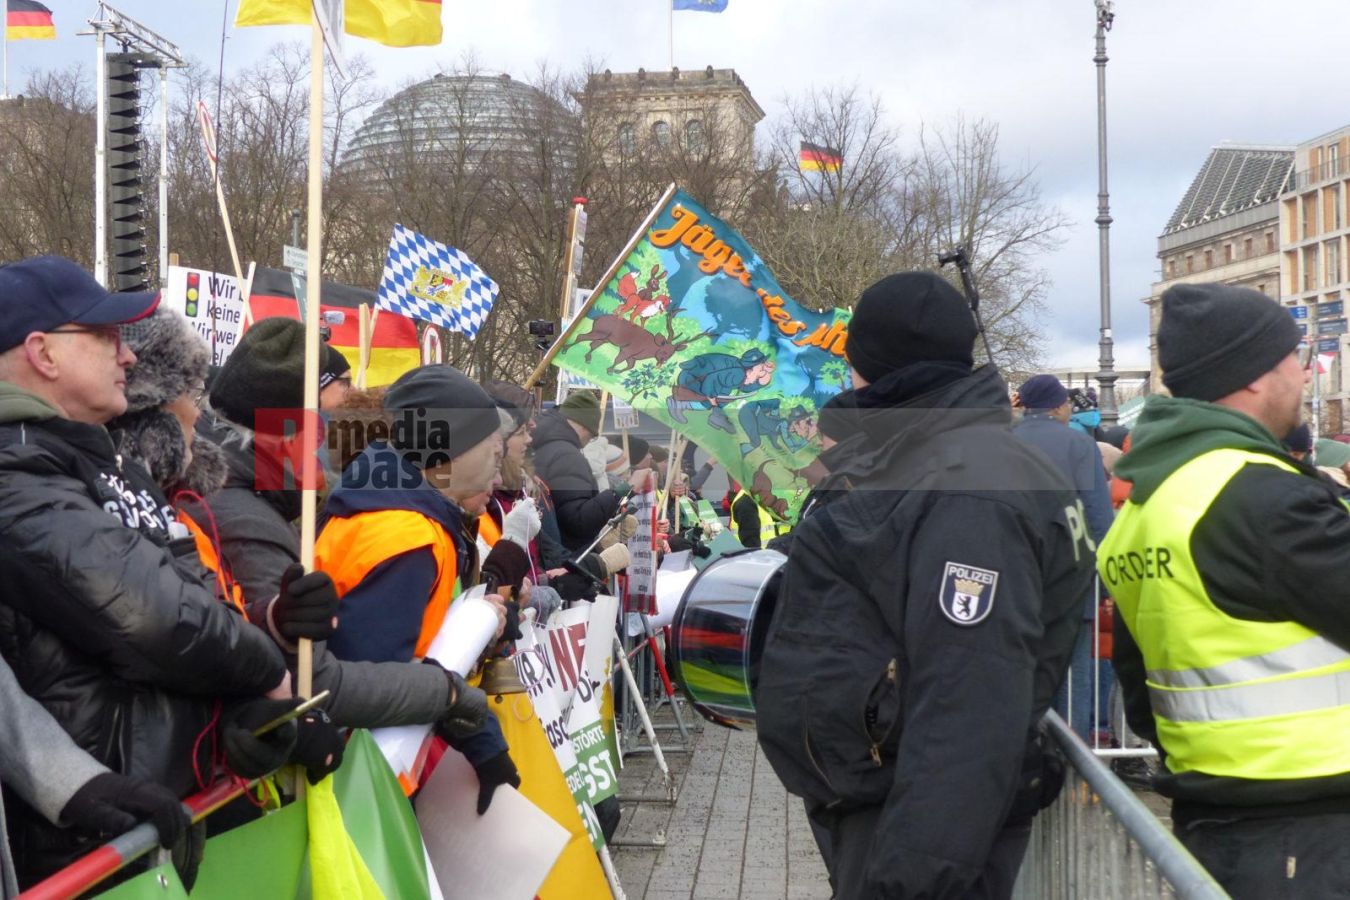 Bauernprotest in Berlin <i>Bild Denner/R-mediabase</i> <br><a href=/confor2/?bld=79040&pst=78995&aid=86&i1=Denner/R-mediabase>Download Bild 79040</a>  <br><a href=/?p=78995>Zum Beitrag 78995</a>